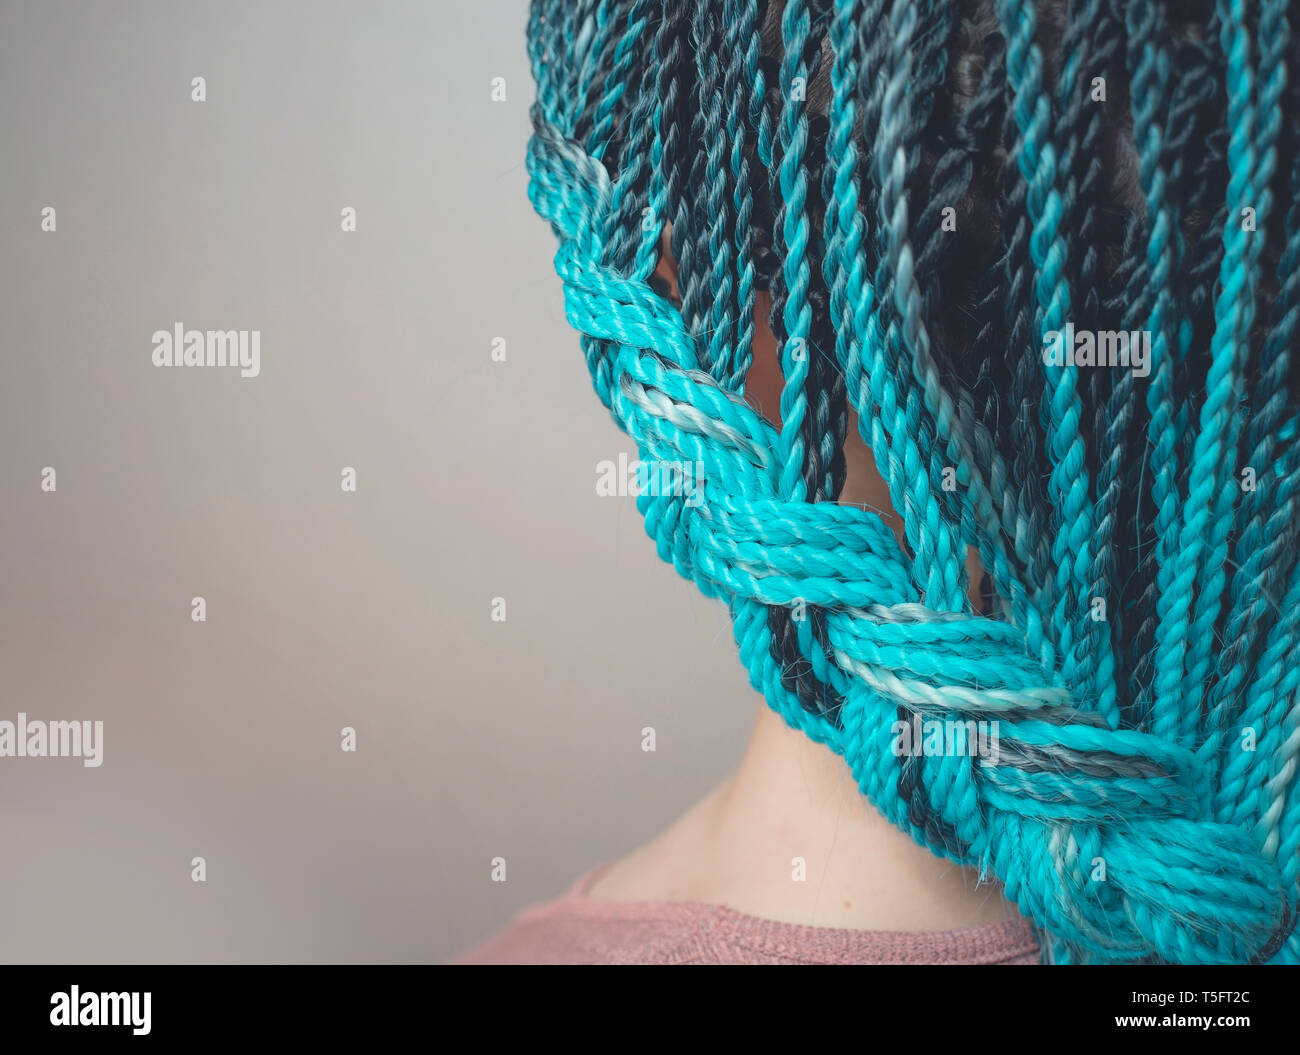 Tresses tresses sénégalaises sont entrelacées pour cheveux de la fille, les tresses de cheveux bleu dans le style africain Banque D'Images